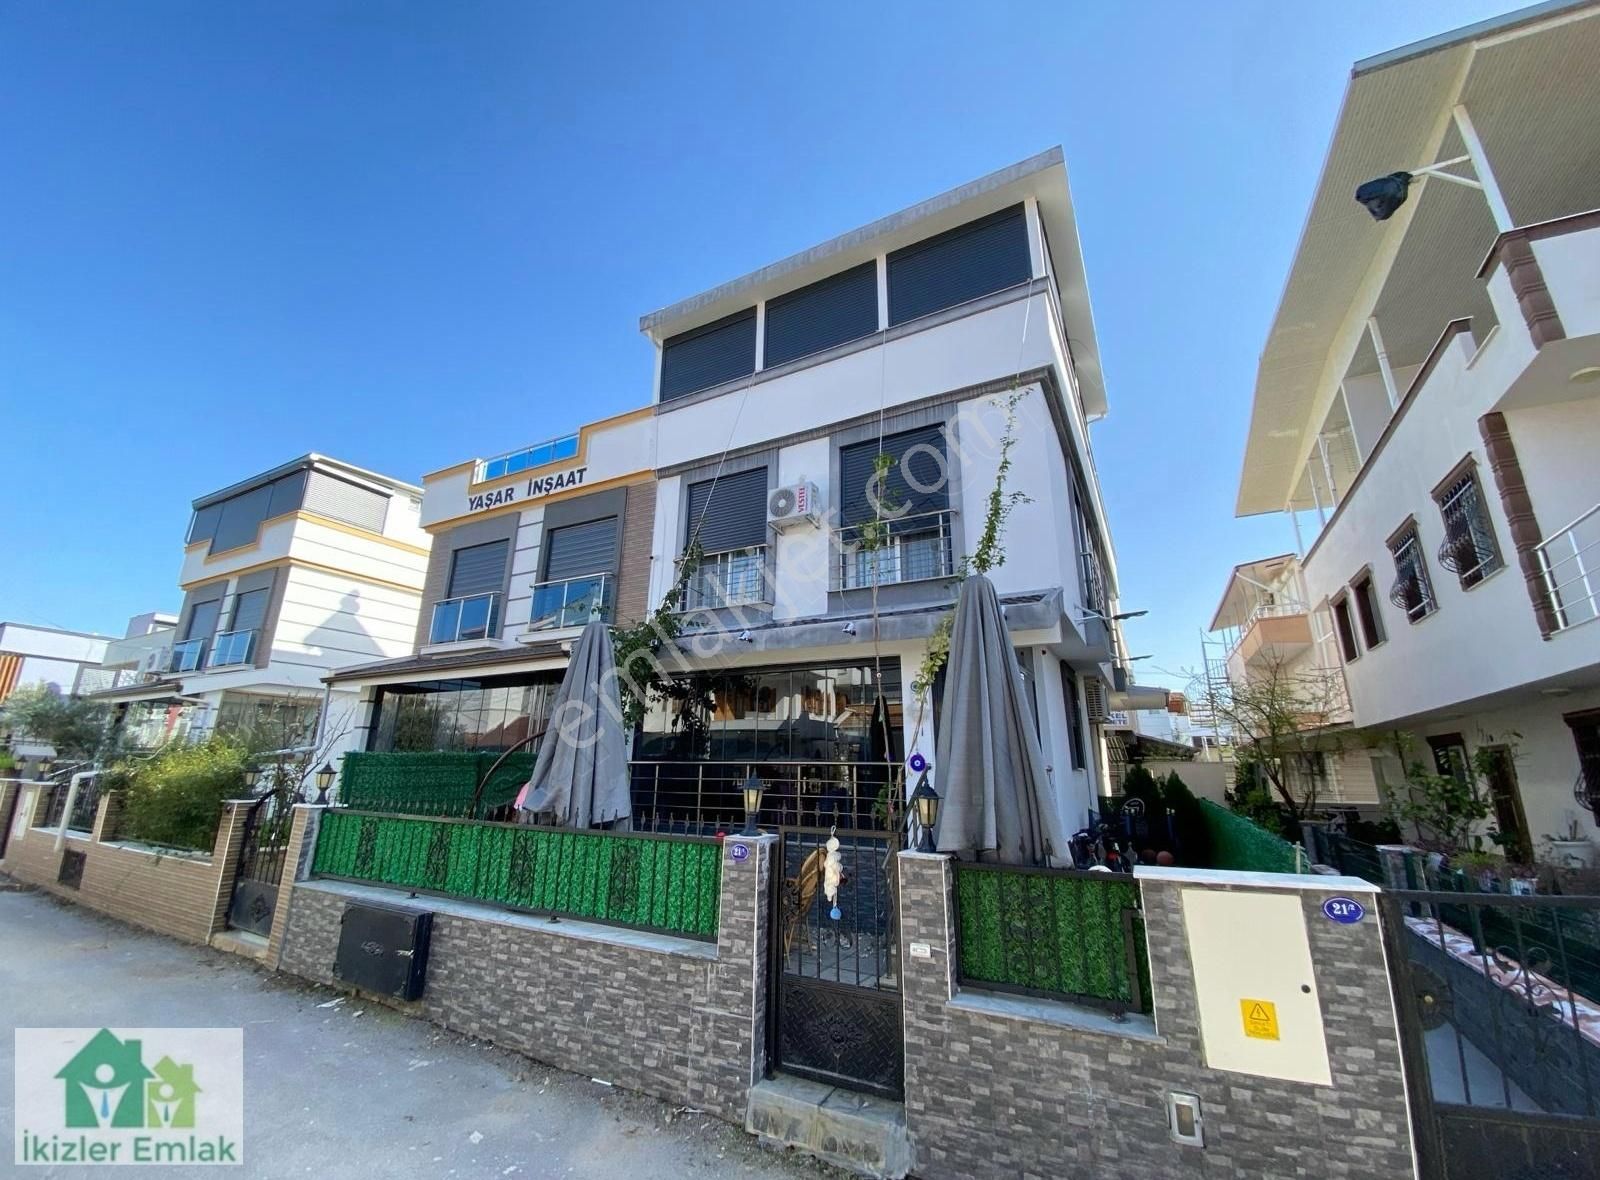 Seferihisar Payamlı Satılık Villa Seferihisar Doğanbey'de Denize Yakın Mesafede Satılık 3+1 VİLLA